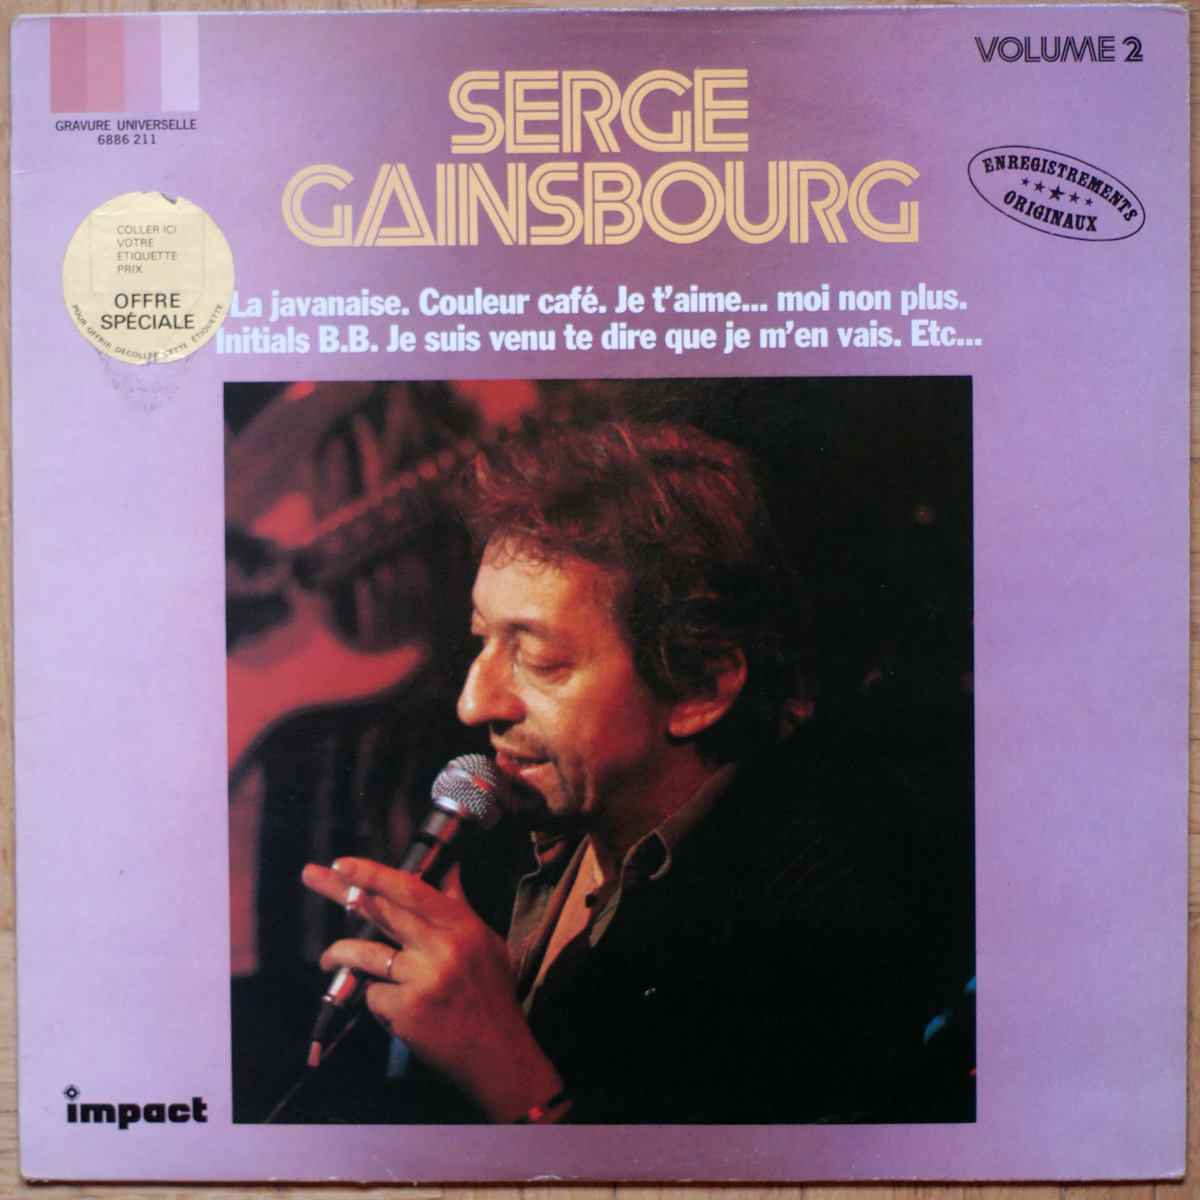 Gainsbourg • Compilation • La javanaise • Couleur café • Initials B.B. • Ballade de Melody Nelson • Enregistrements originaux • Volume 2